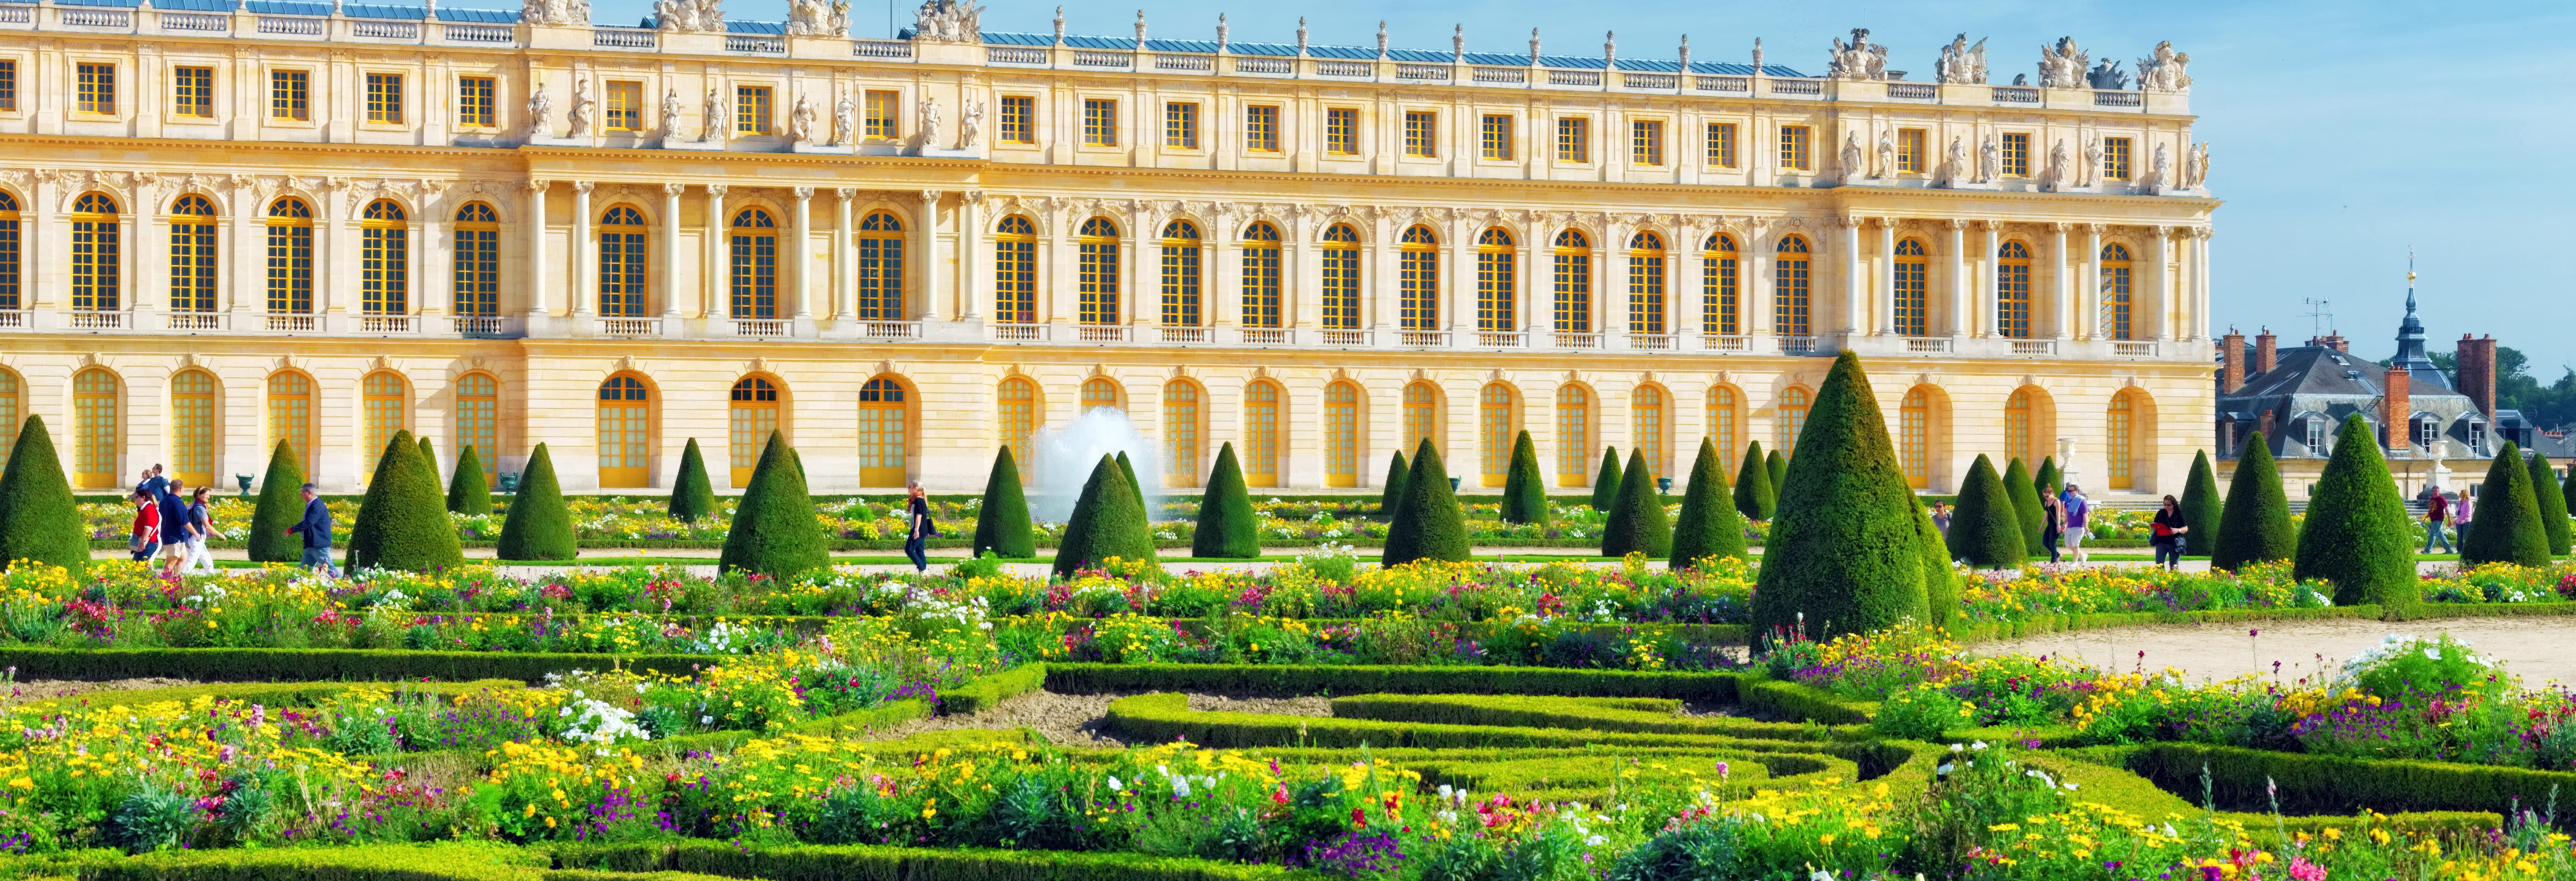 Версаль билеты. Версальский дворцово-парковый ансамбль. Версаль дворец Франция. Версальский парк в Версальском Дворце. Дворецмв верспле дворец в Версале.